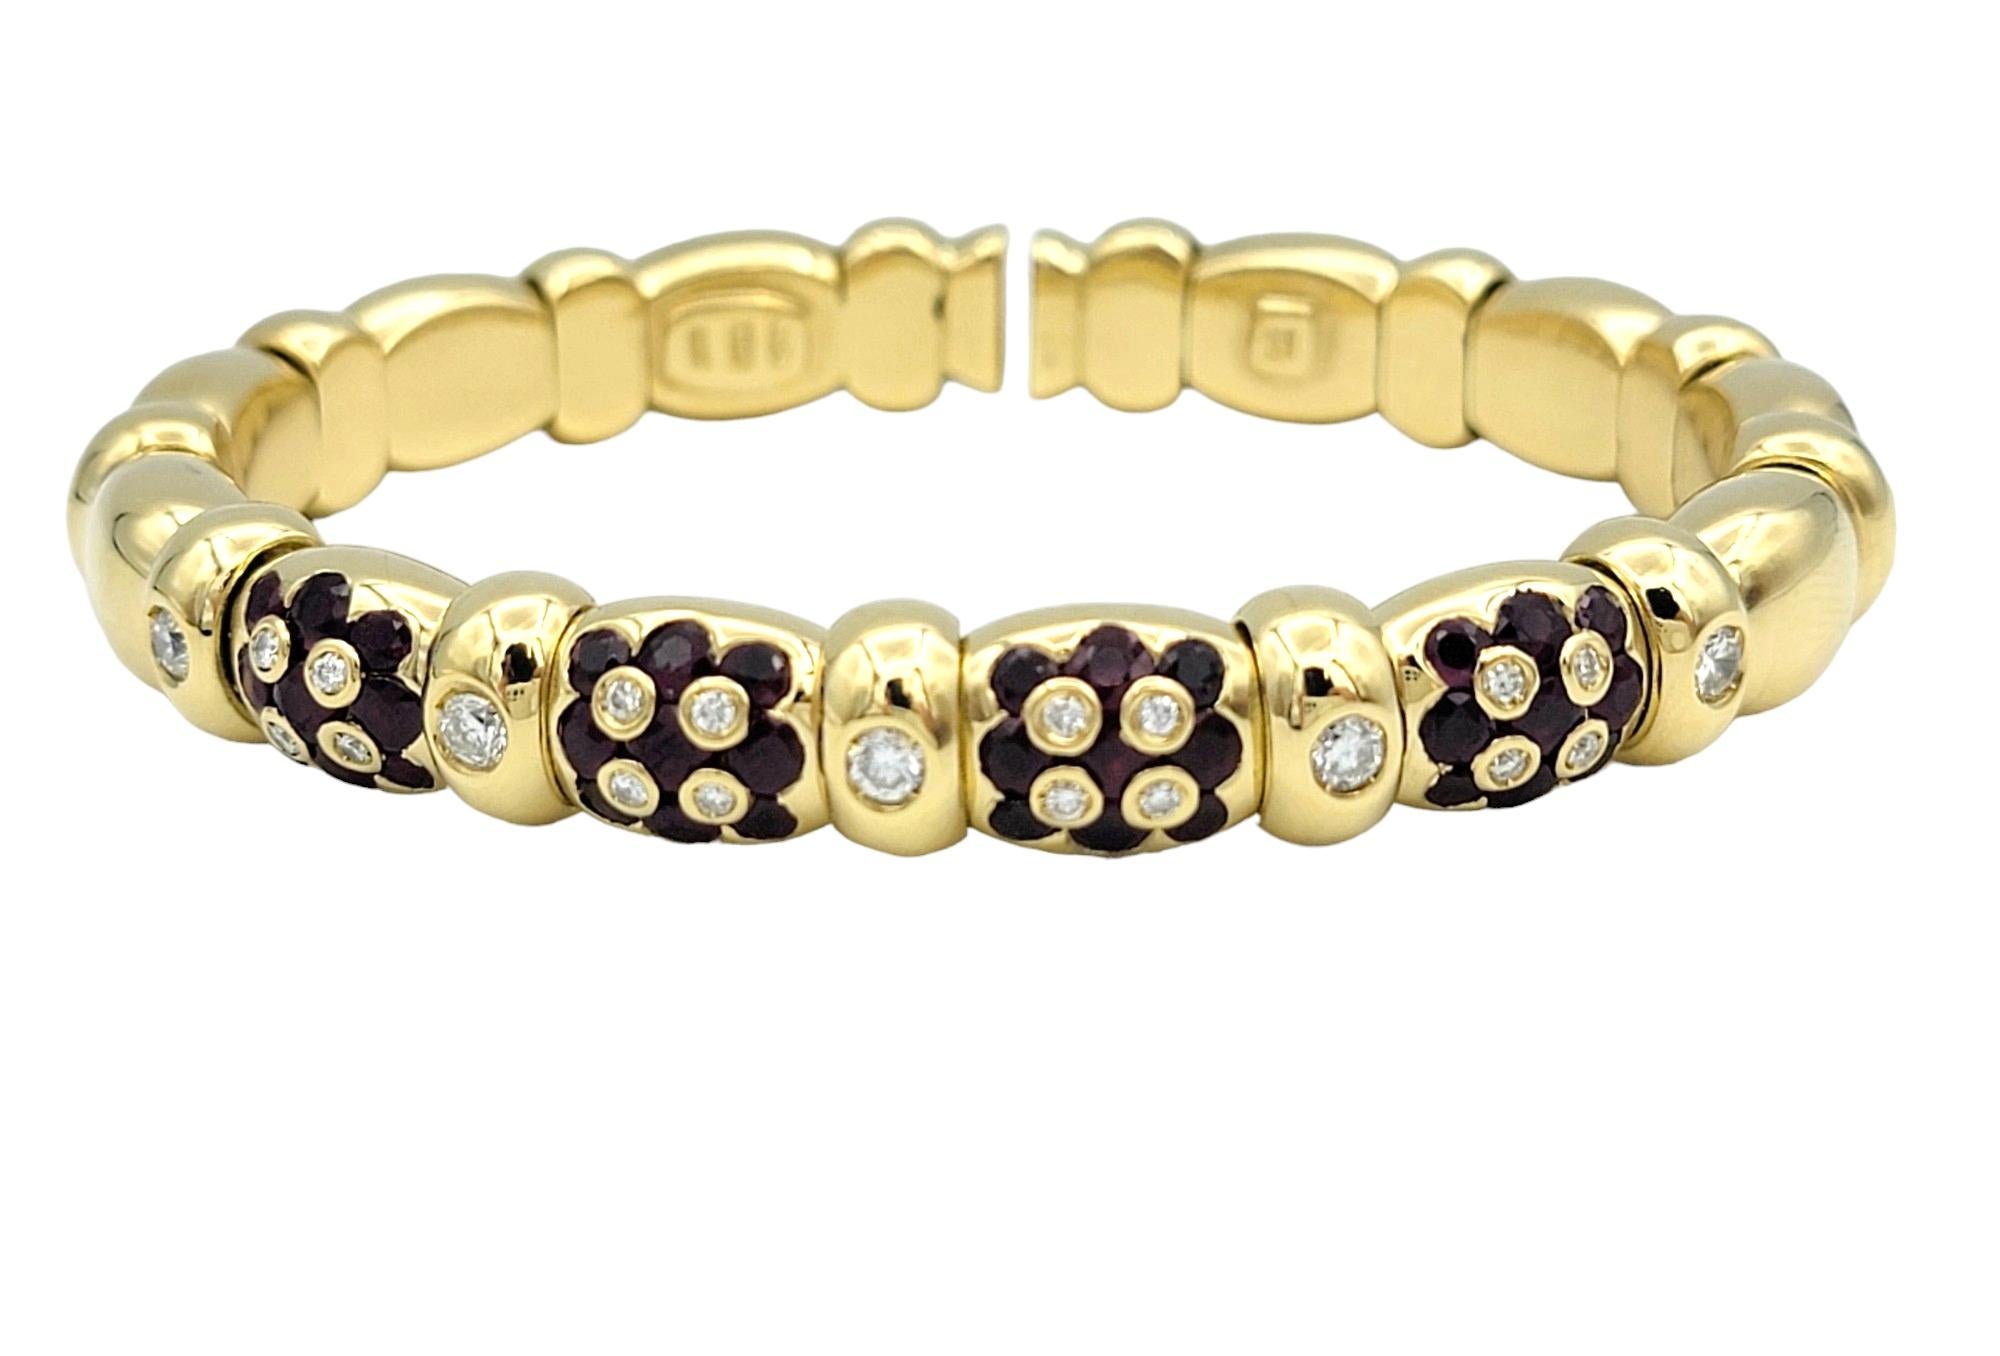 Ce magnifique bracelet, réalisé en or jaune 18 carats, est un véritable chef-d'œuvre de joaillerie. L'alternance des maillons perlés crée un rythme et une texture captivants, renforçant l'allure générale du bracelet. Chaque maillon est